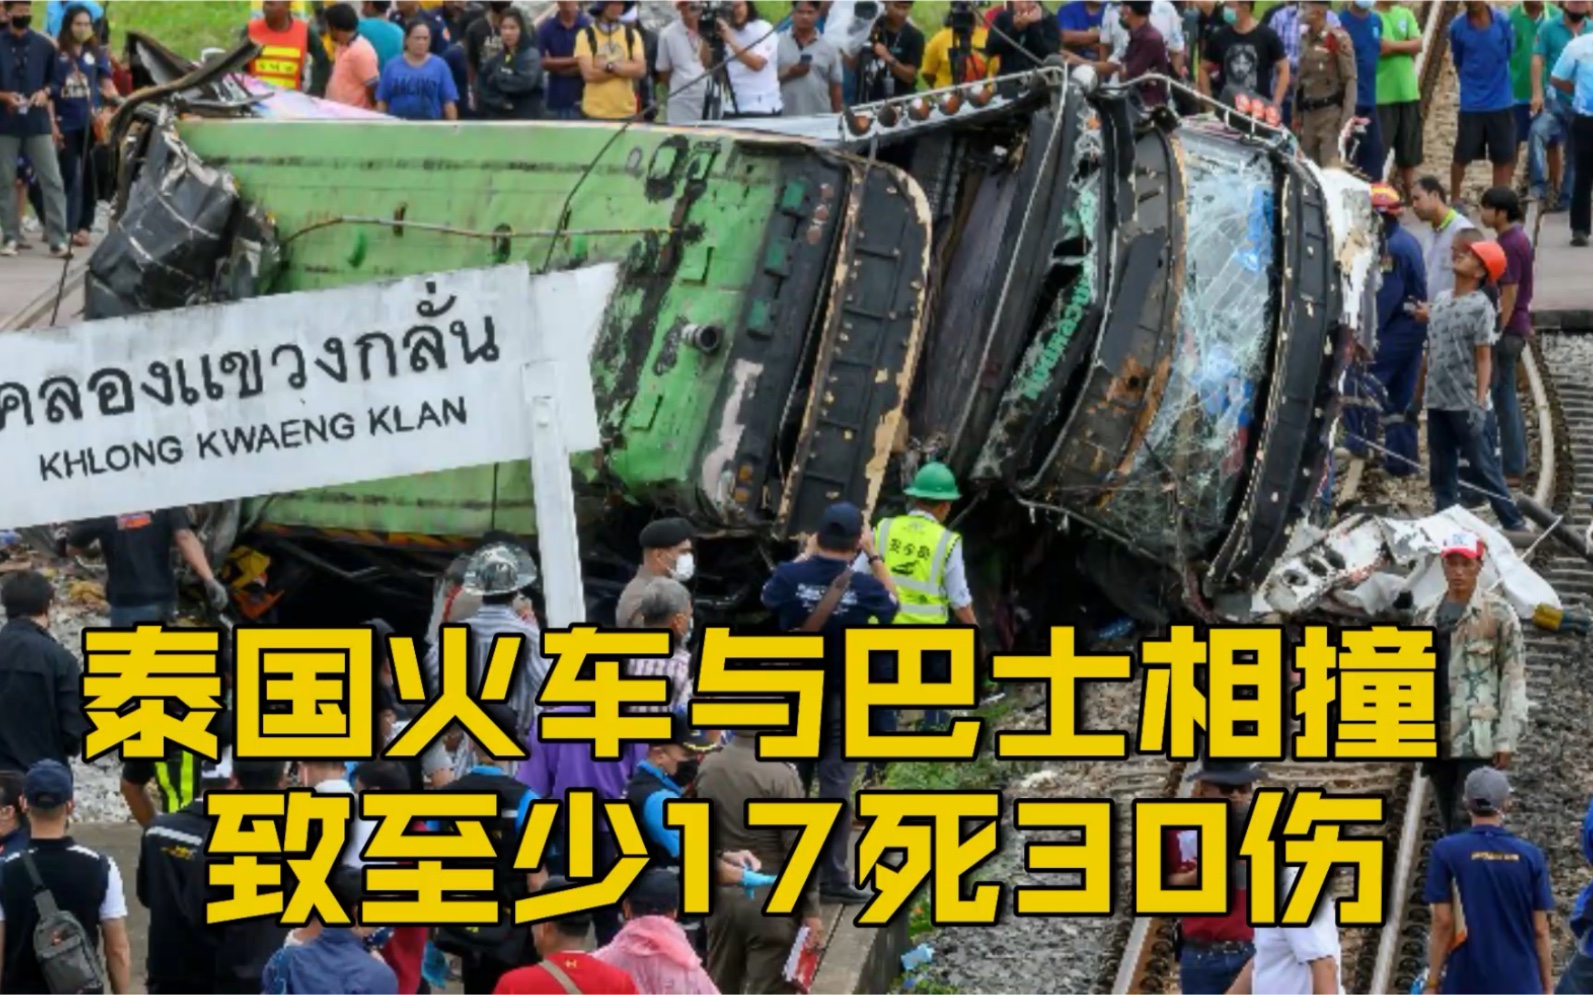 【泰国一列火车与巴士相撞 致至少17人死30人伤】